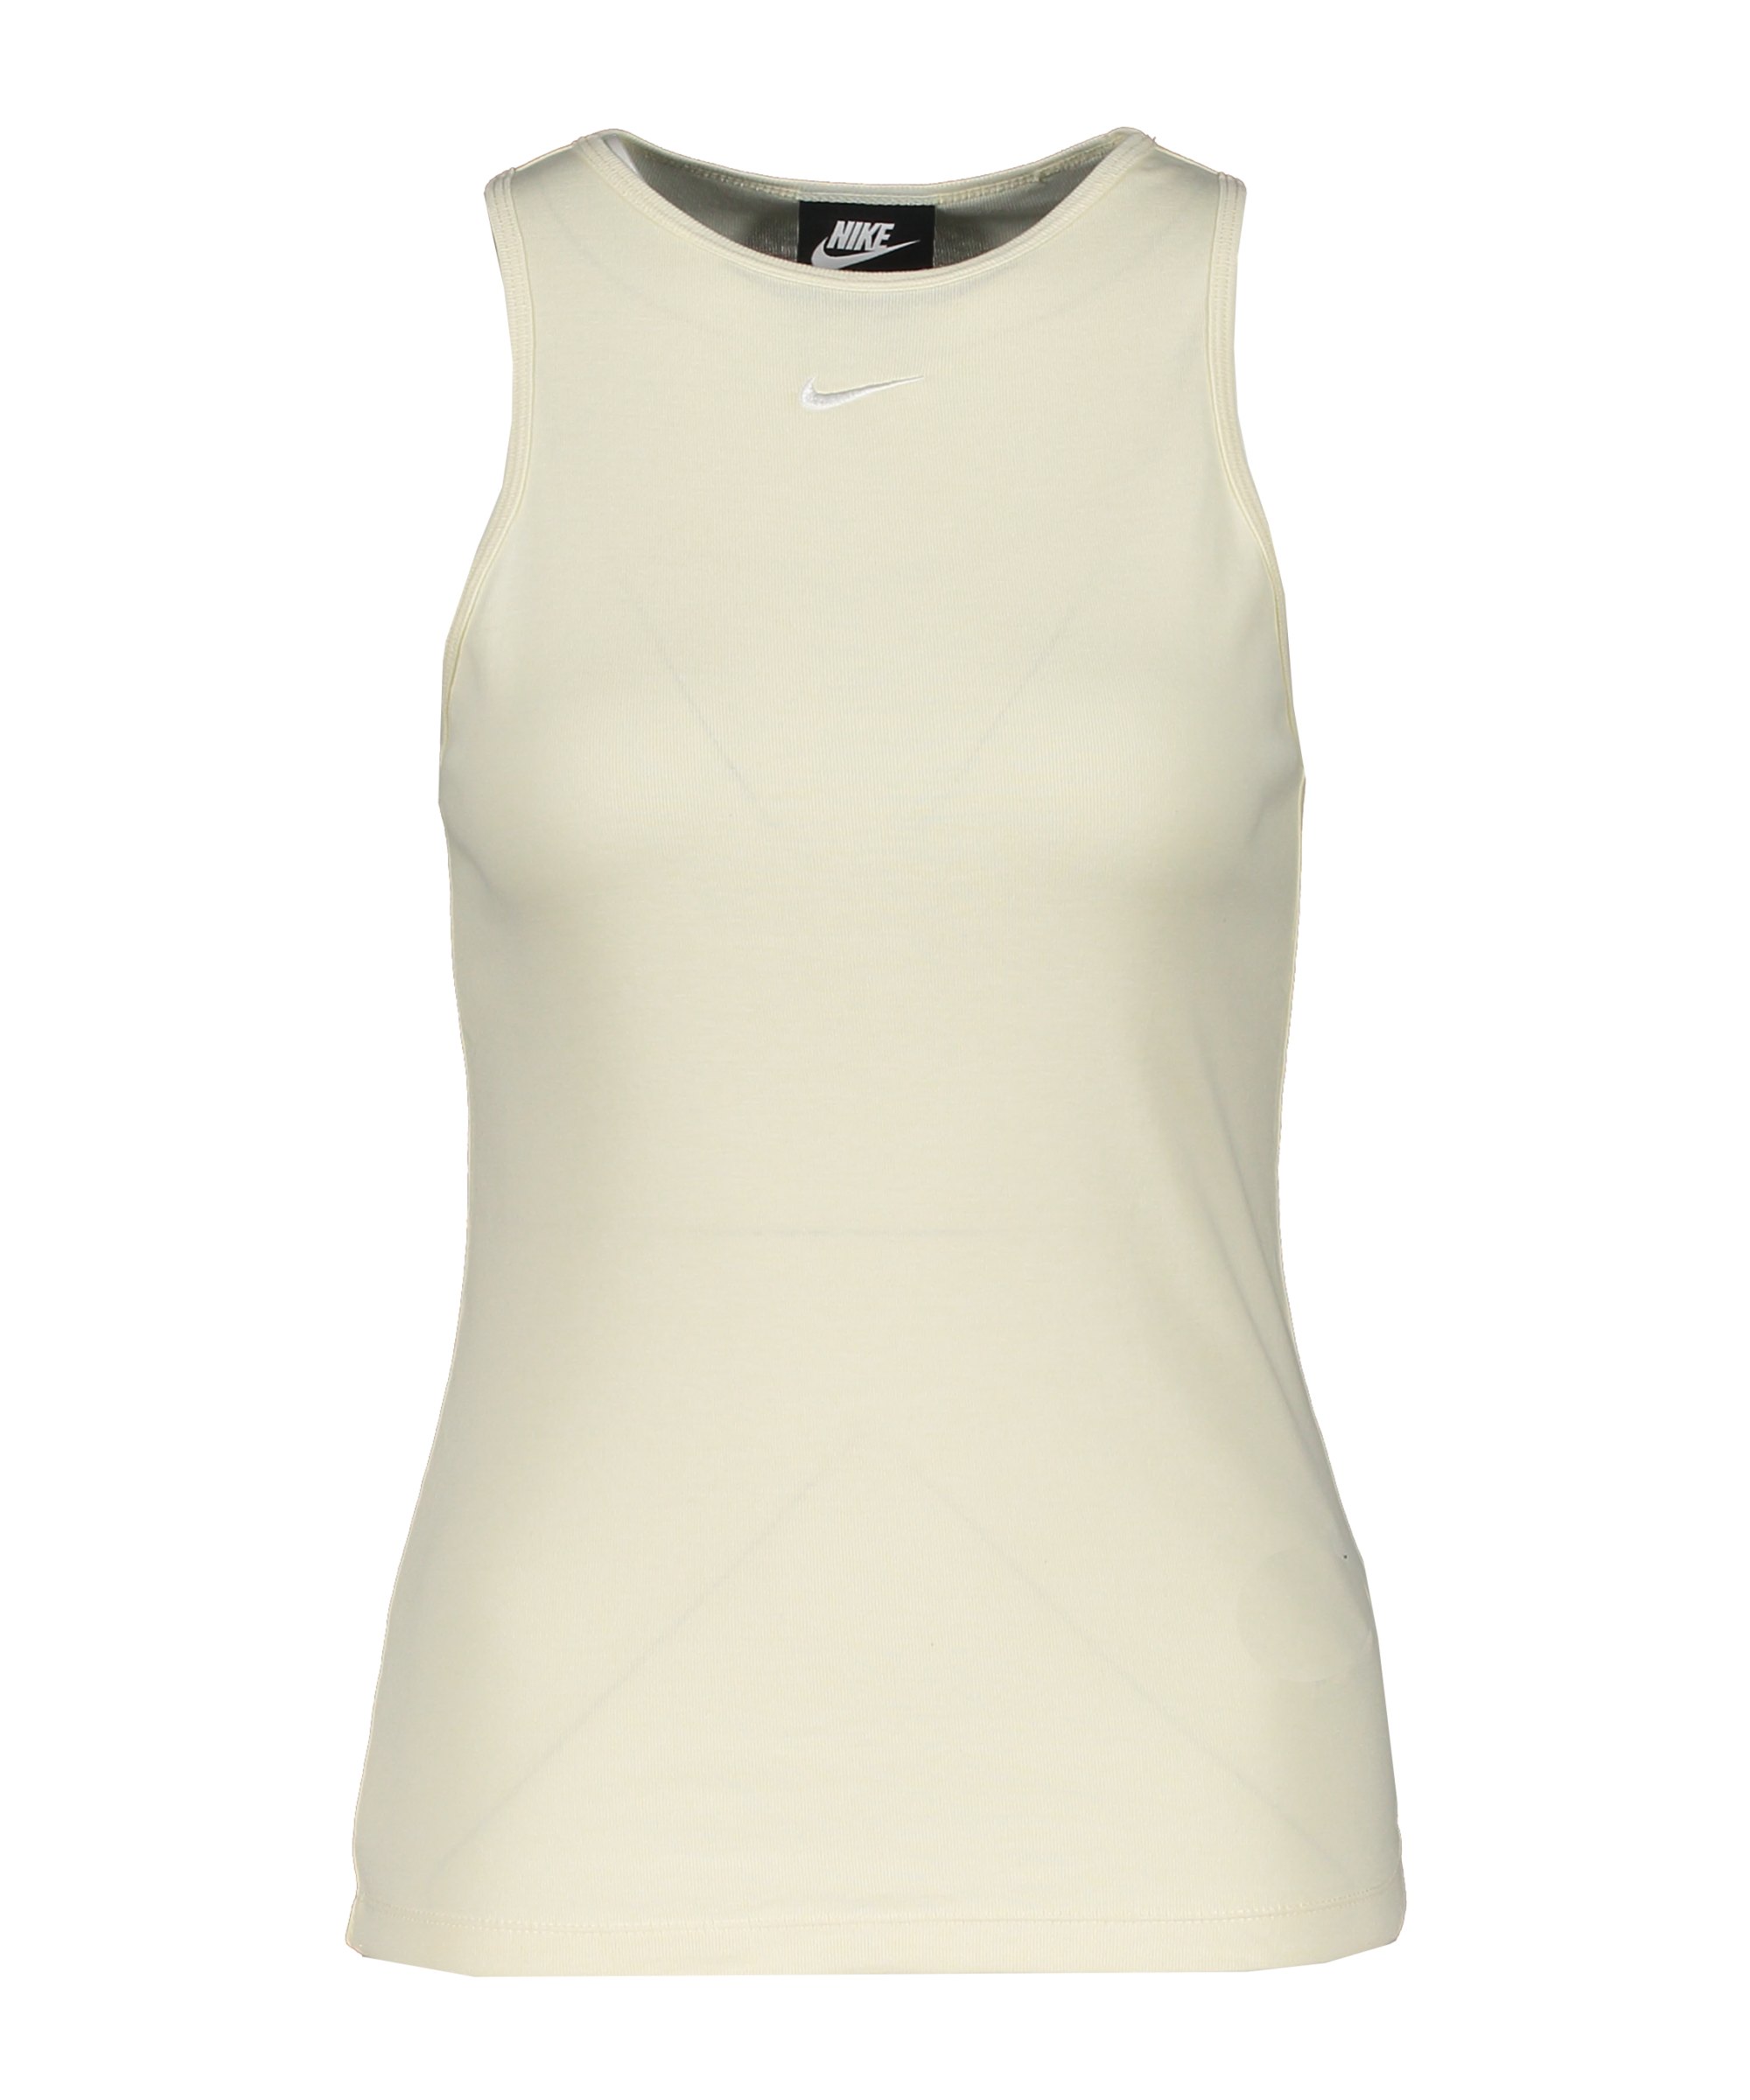 Nike Essential Tanktop Damen Beige Weiss F113 - beige